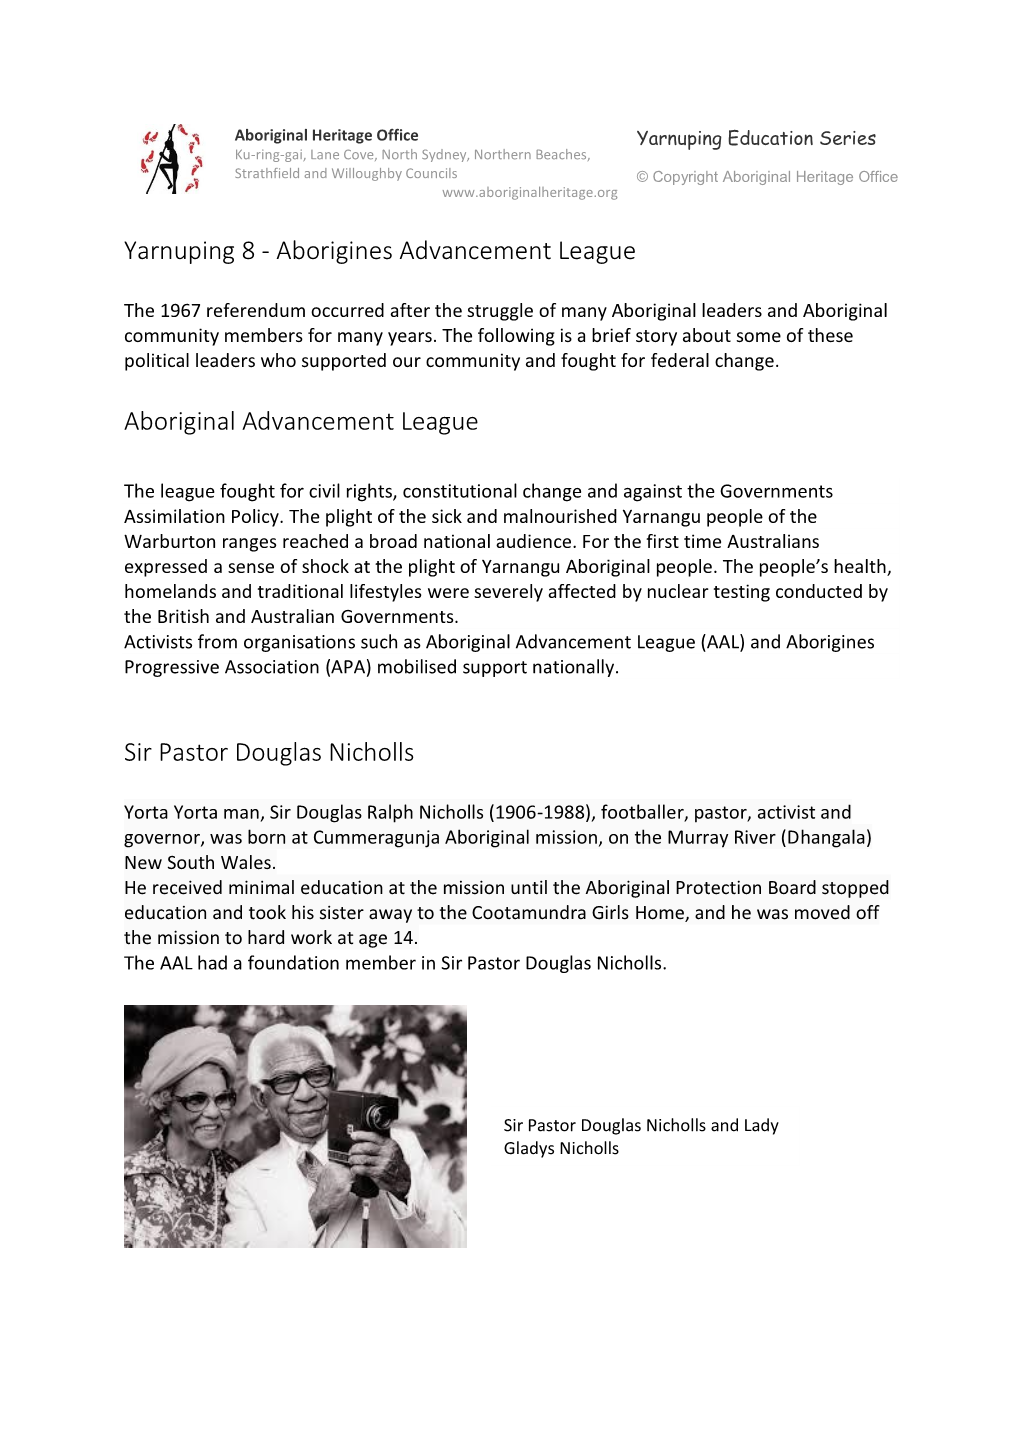 Aboriginal Advancement League